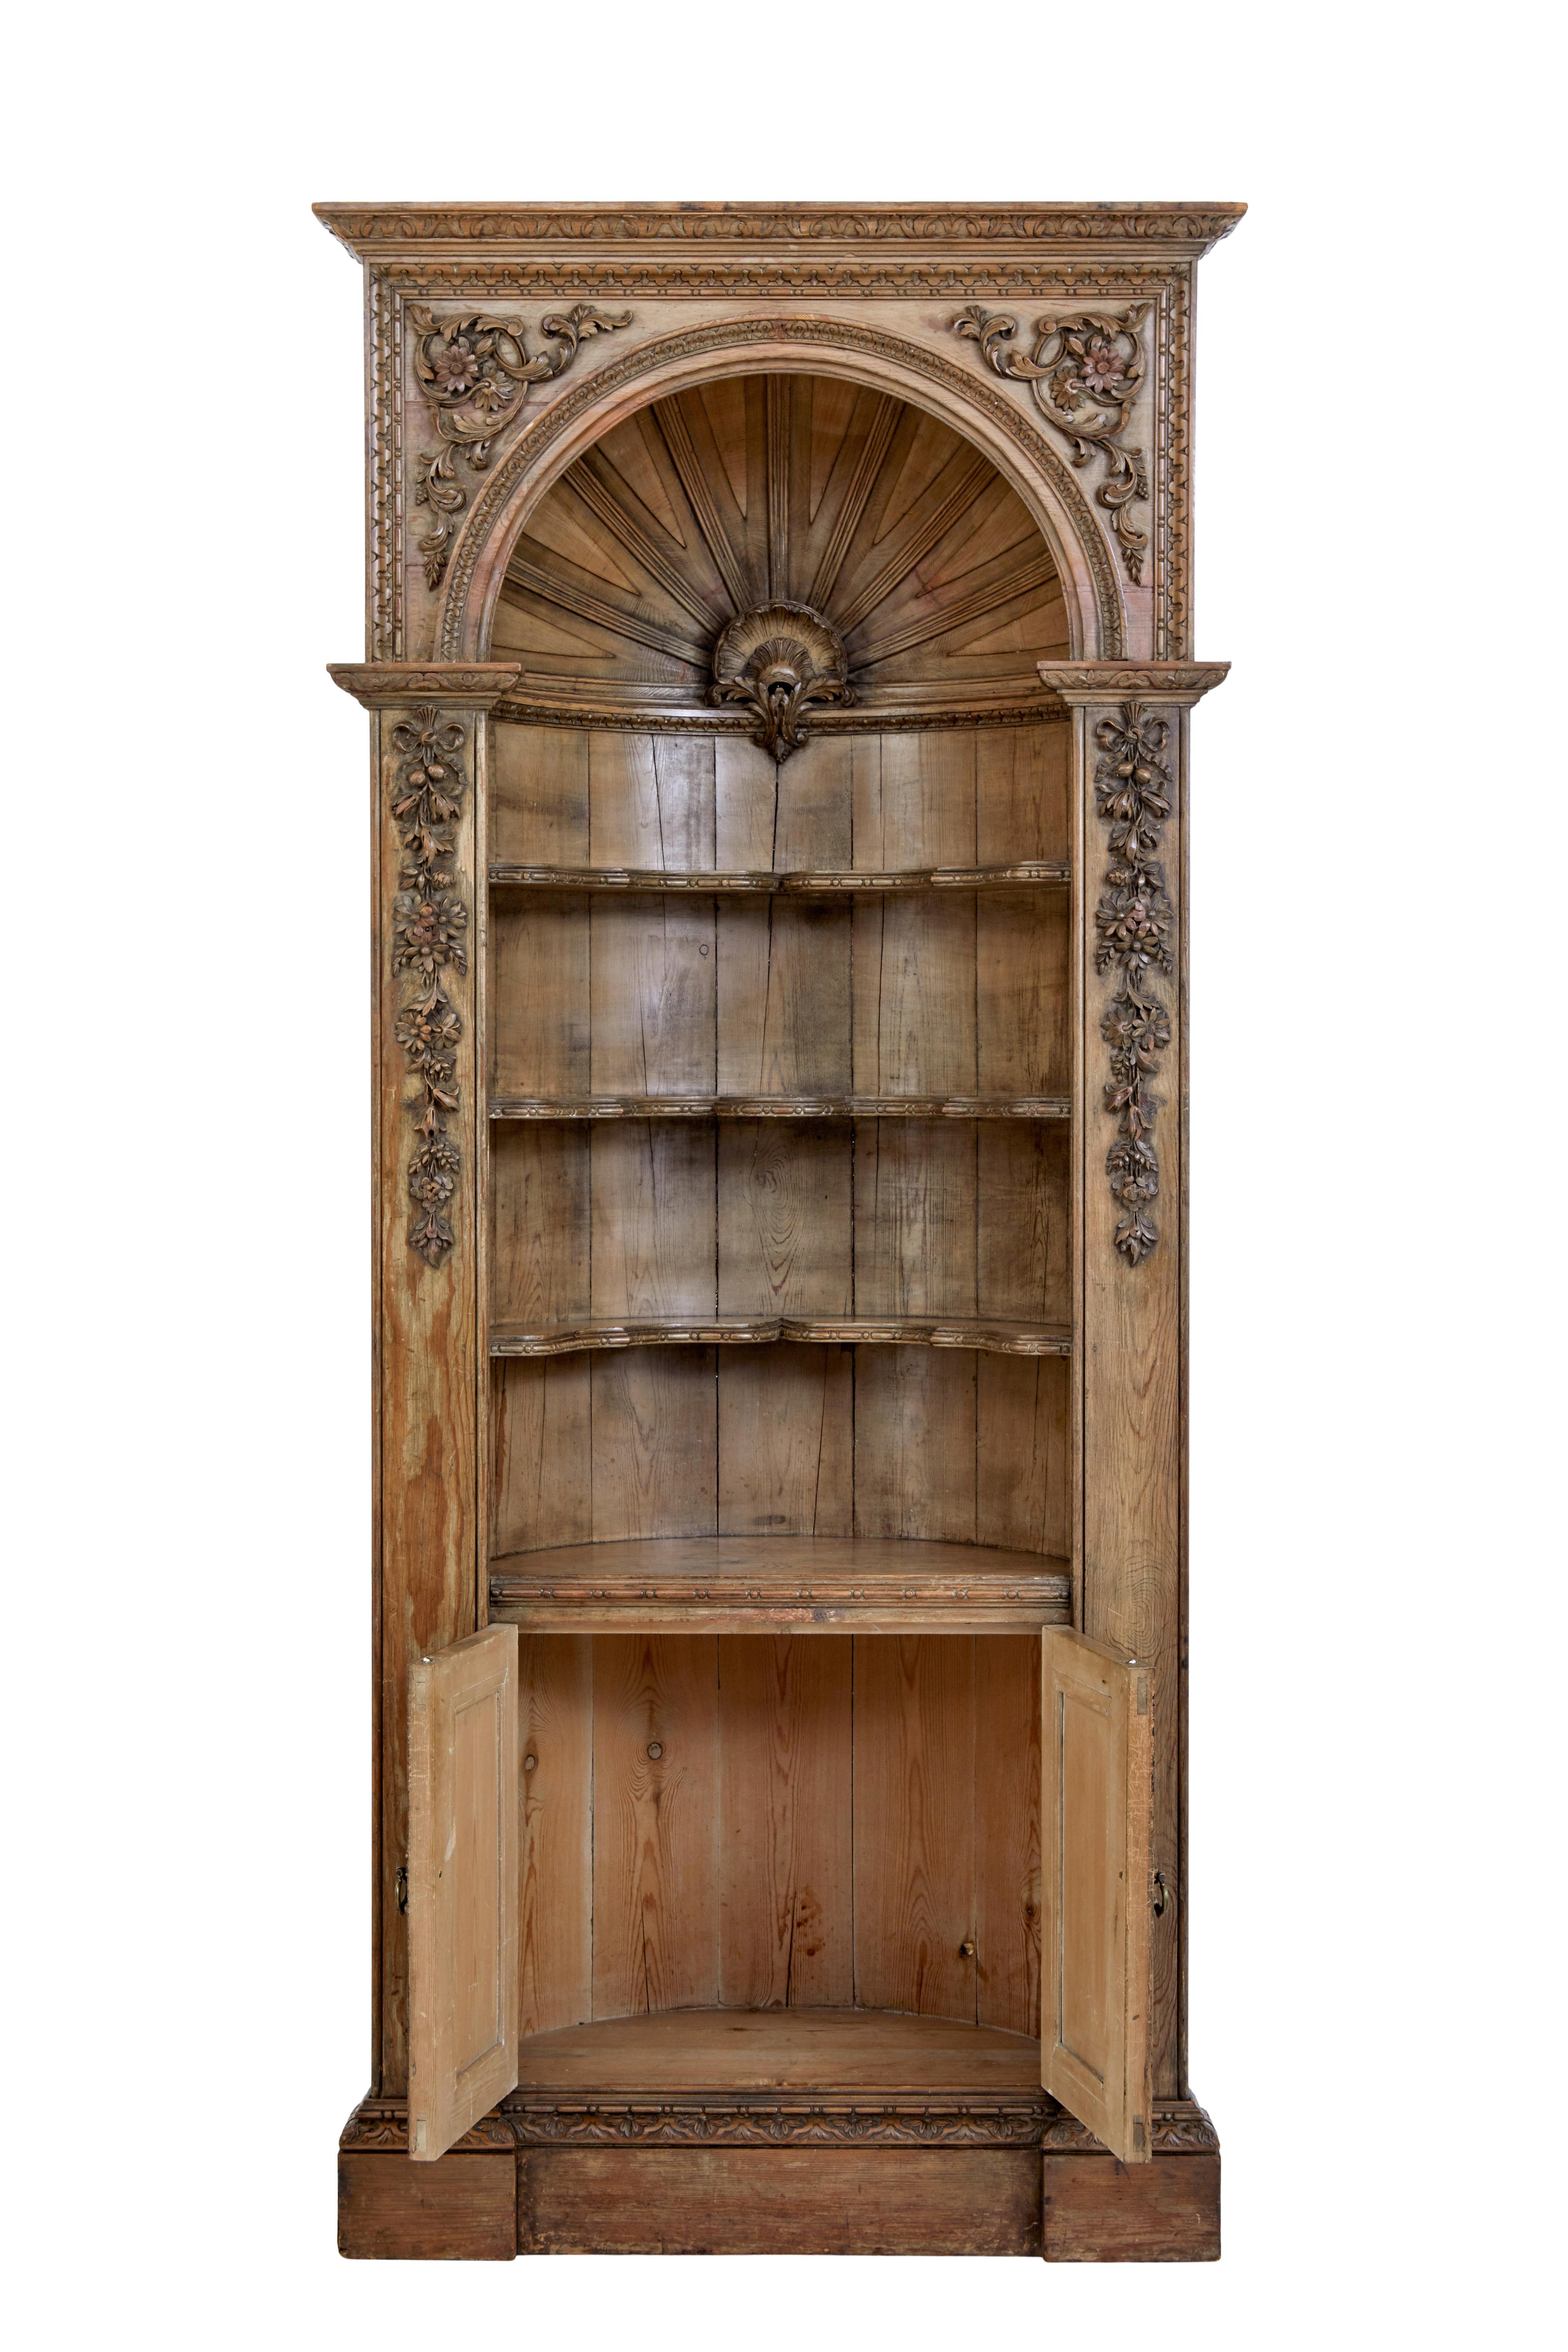 Feine Qualität Englisch Mitte des 18. Jahrhunderts geschnitzt Kiefer Kuppel oben ausgestattet Schrank circa 1760.

Hervorragende Qualität, die in eine Wandnische eingepasst worden wäre, wobei der äußere Rahmen bündig mit der Wand